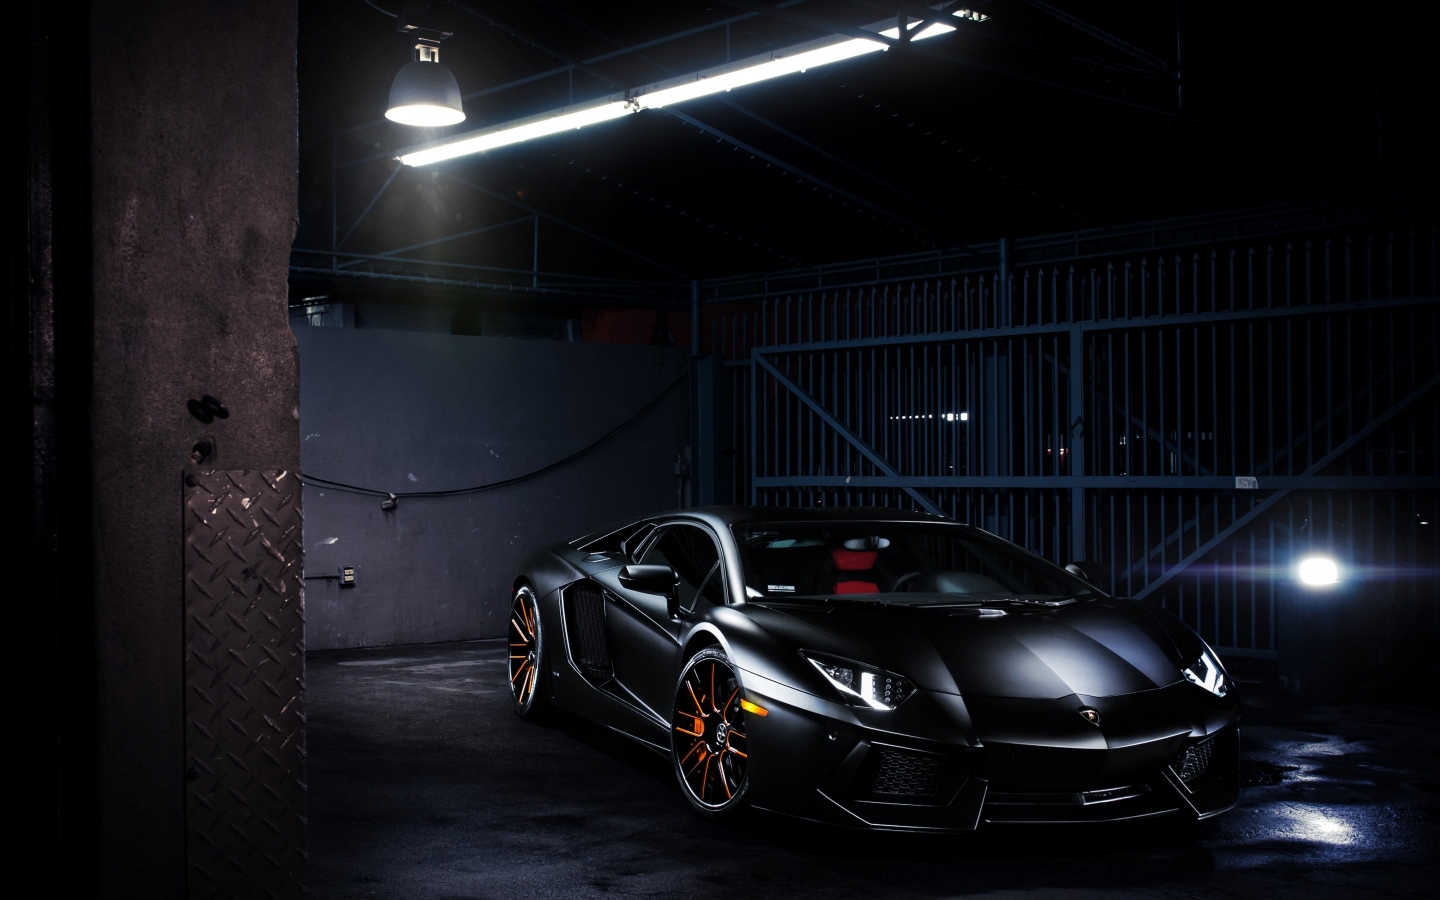 Lamborghini Aventador LP 700-4 for 1440 x 900 widescreen resolution